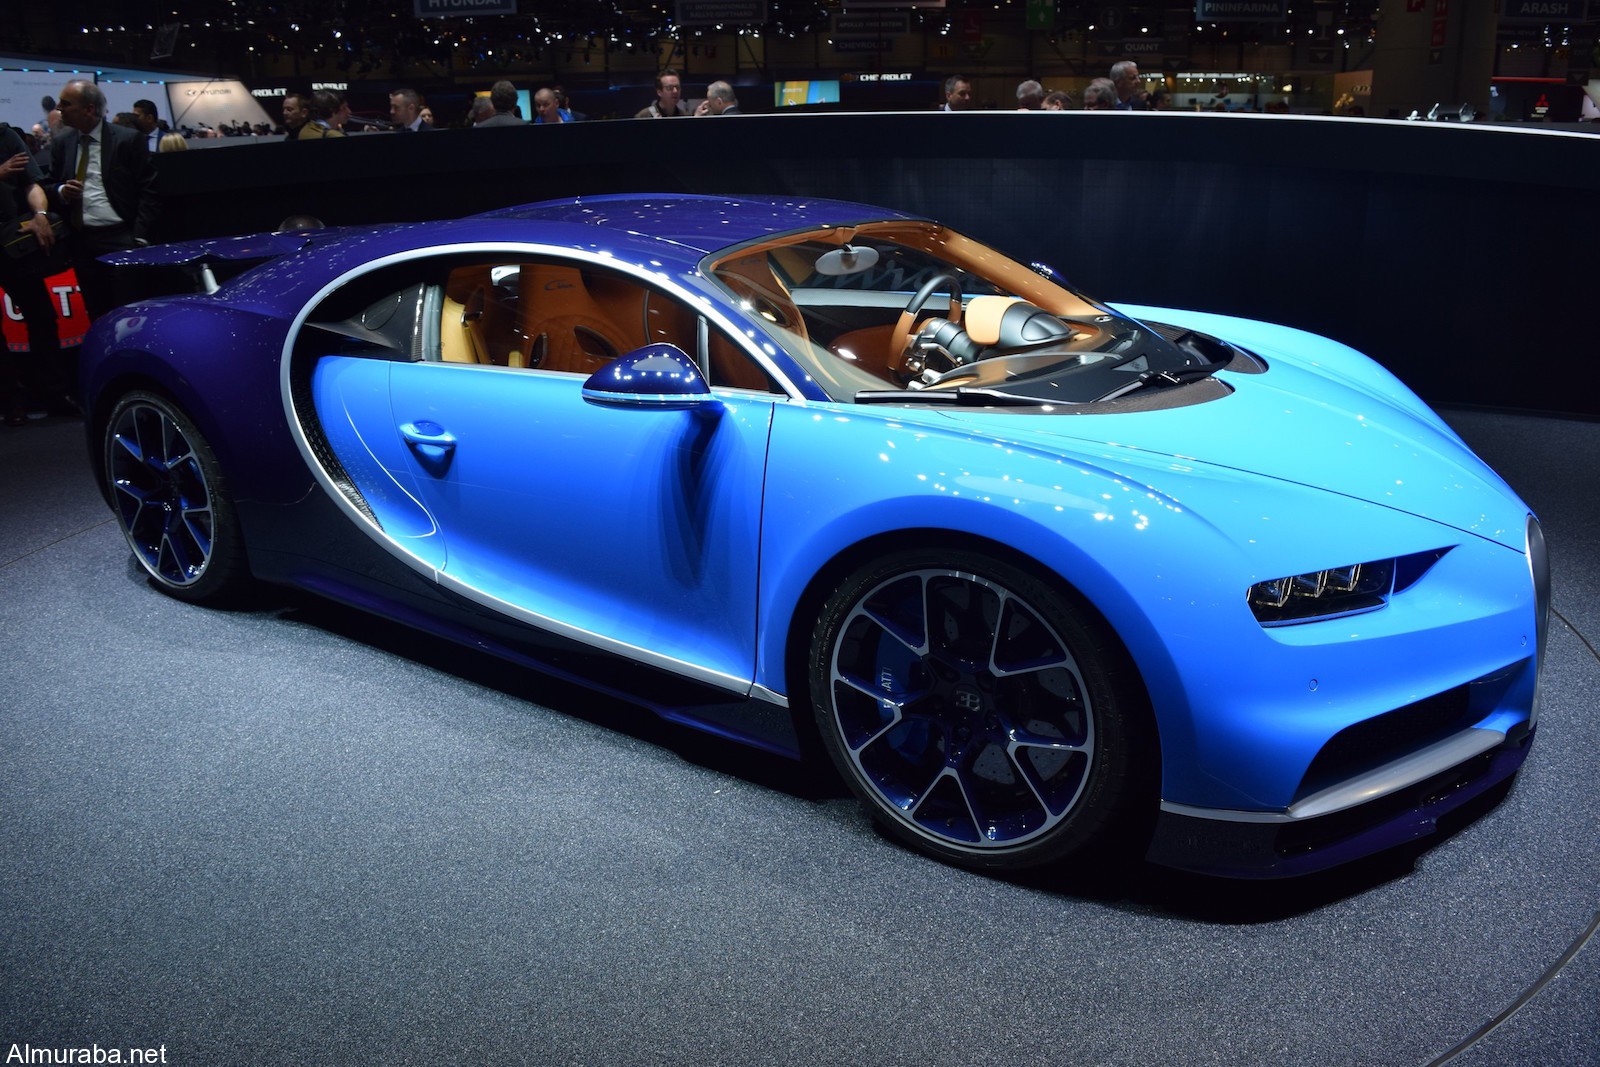 "كوينجسيج" ريجيرا أم "بوجاتي" تشيرون؛ أيّ الخارقتان ذوات محركات الـ1,500 حصان تفضلون؟ Koenigsegg Vs Bugatti 11